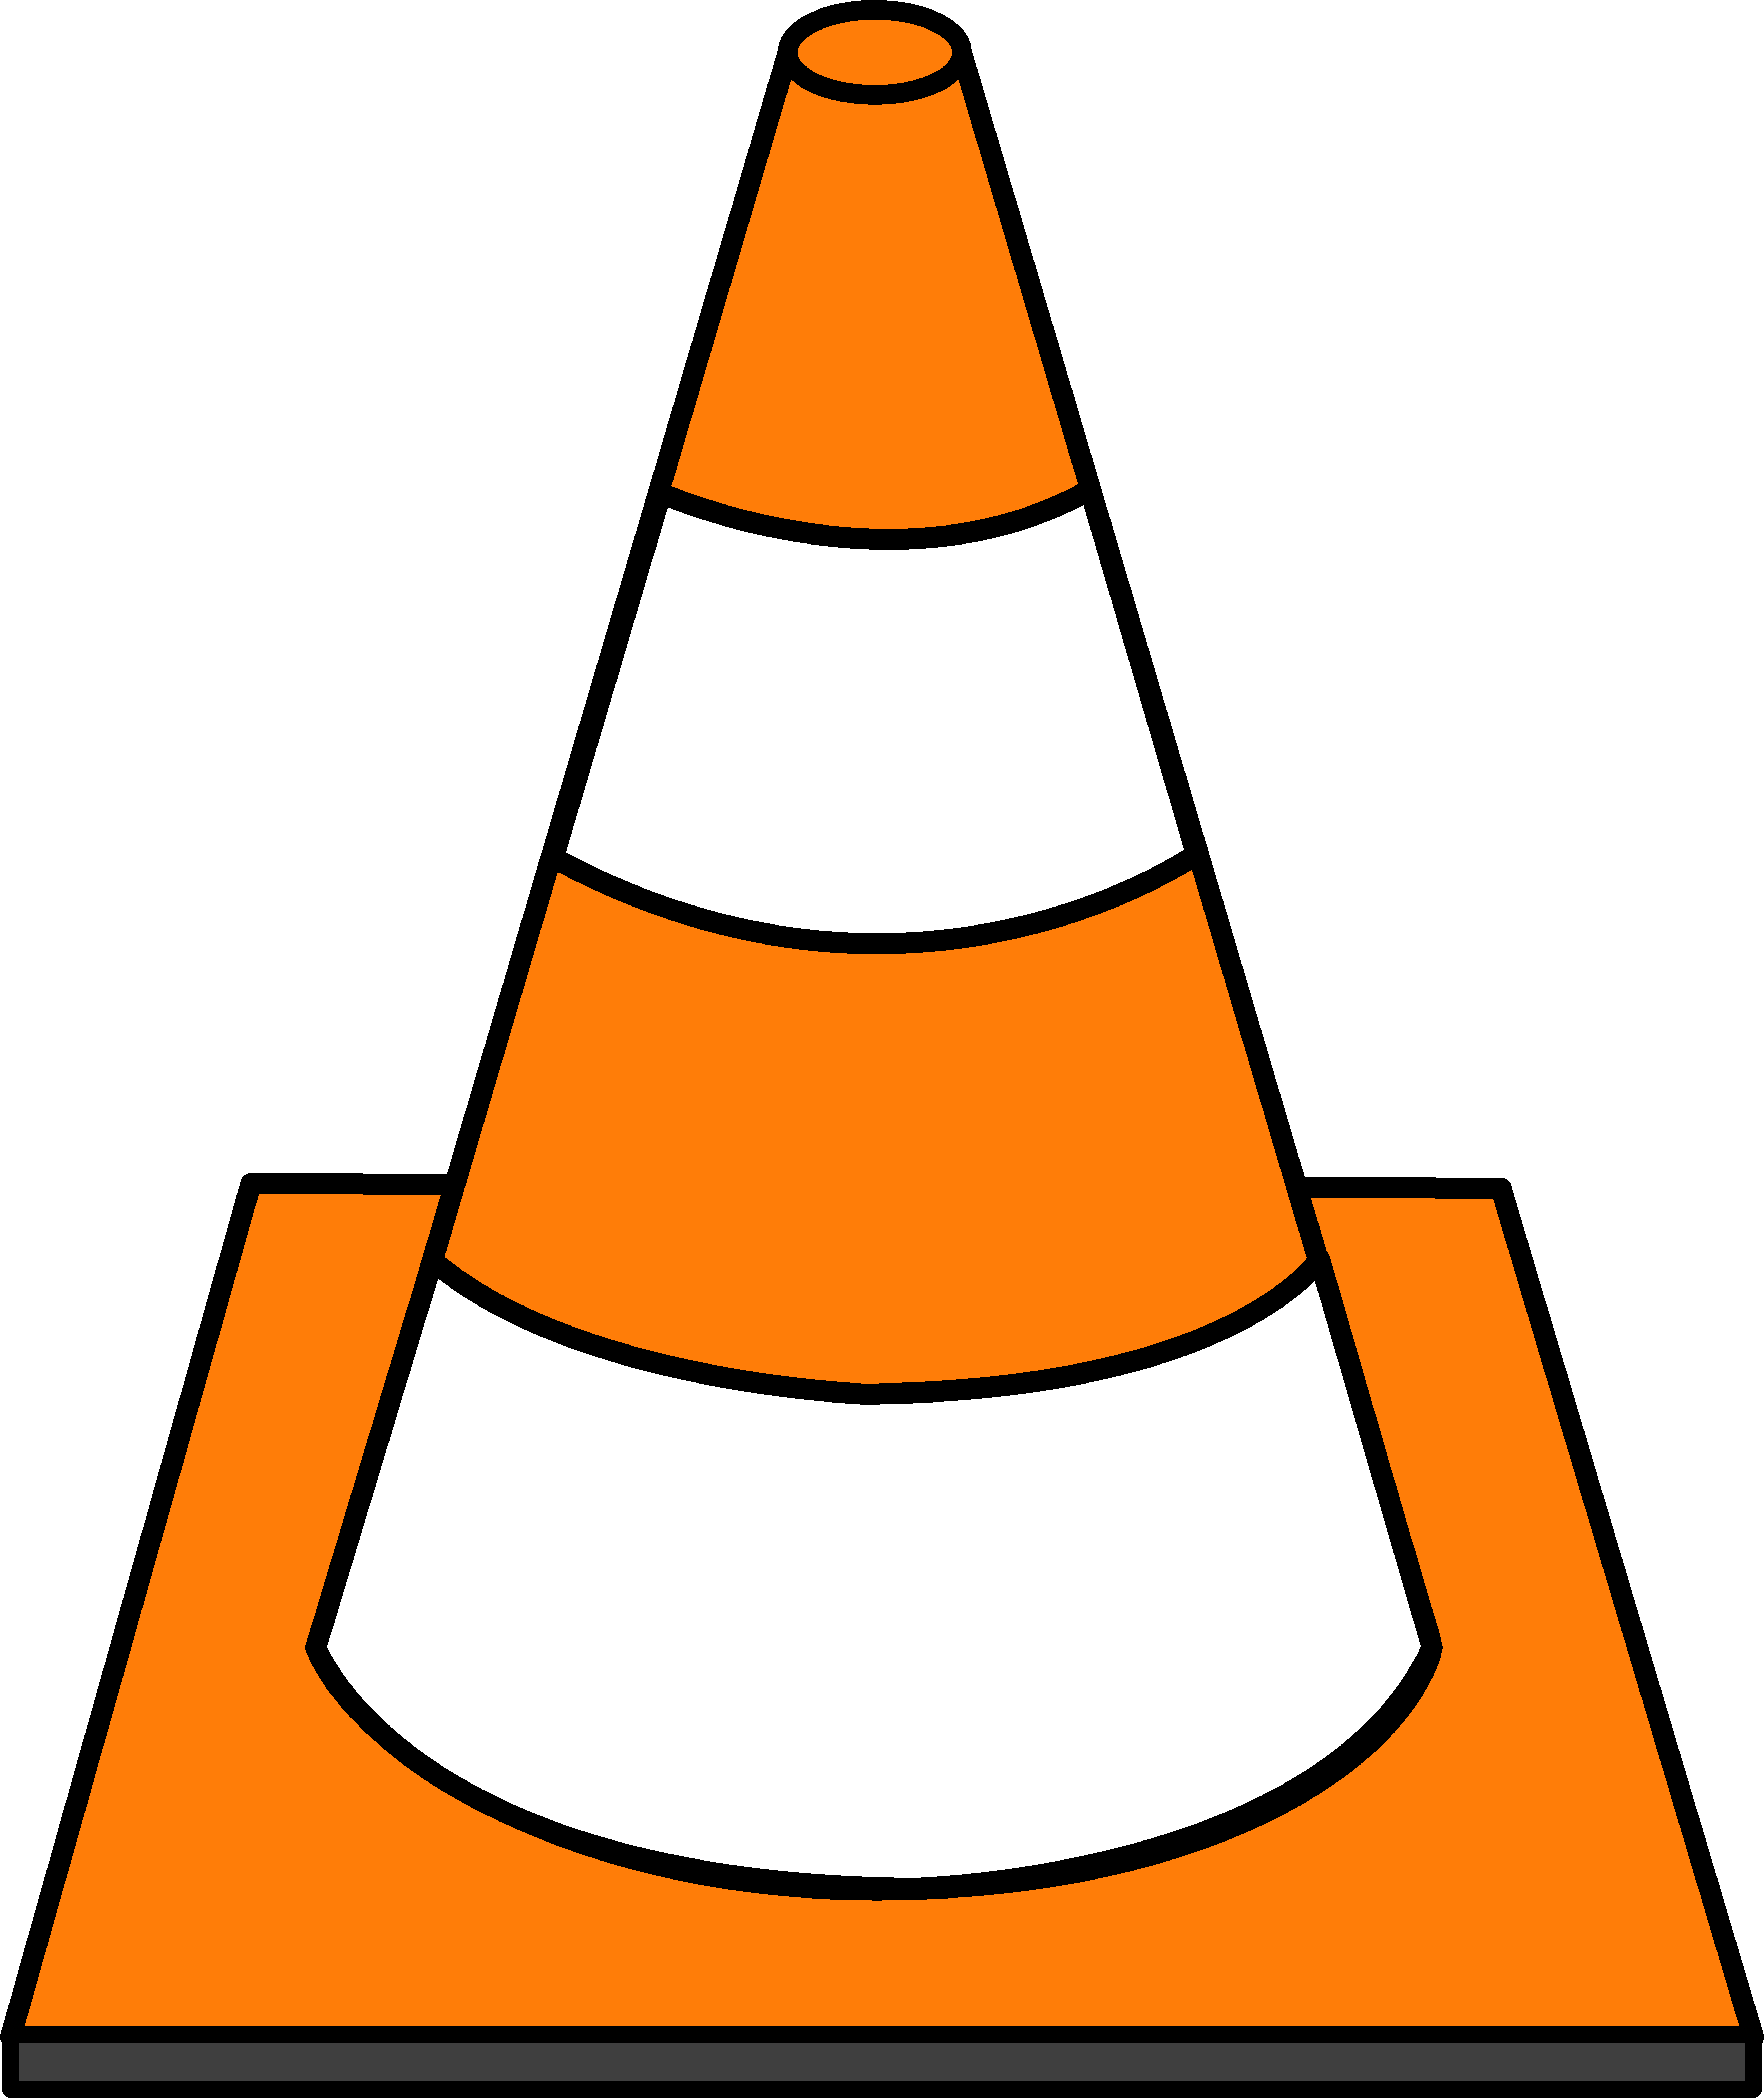 Flashcard of a Cone